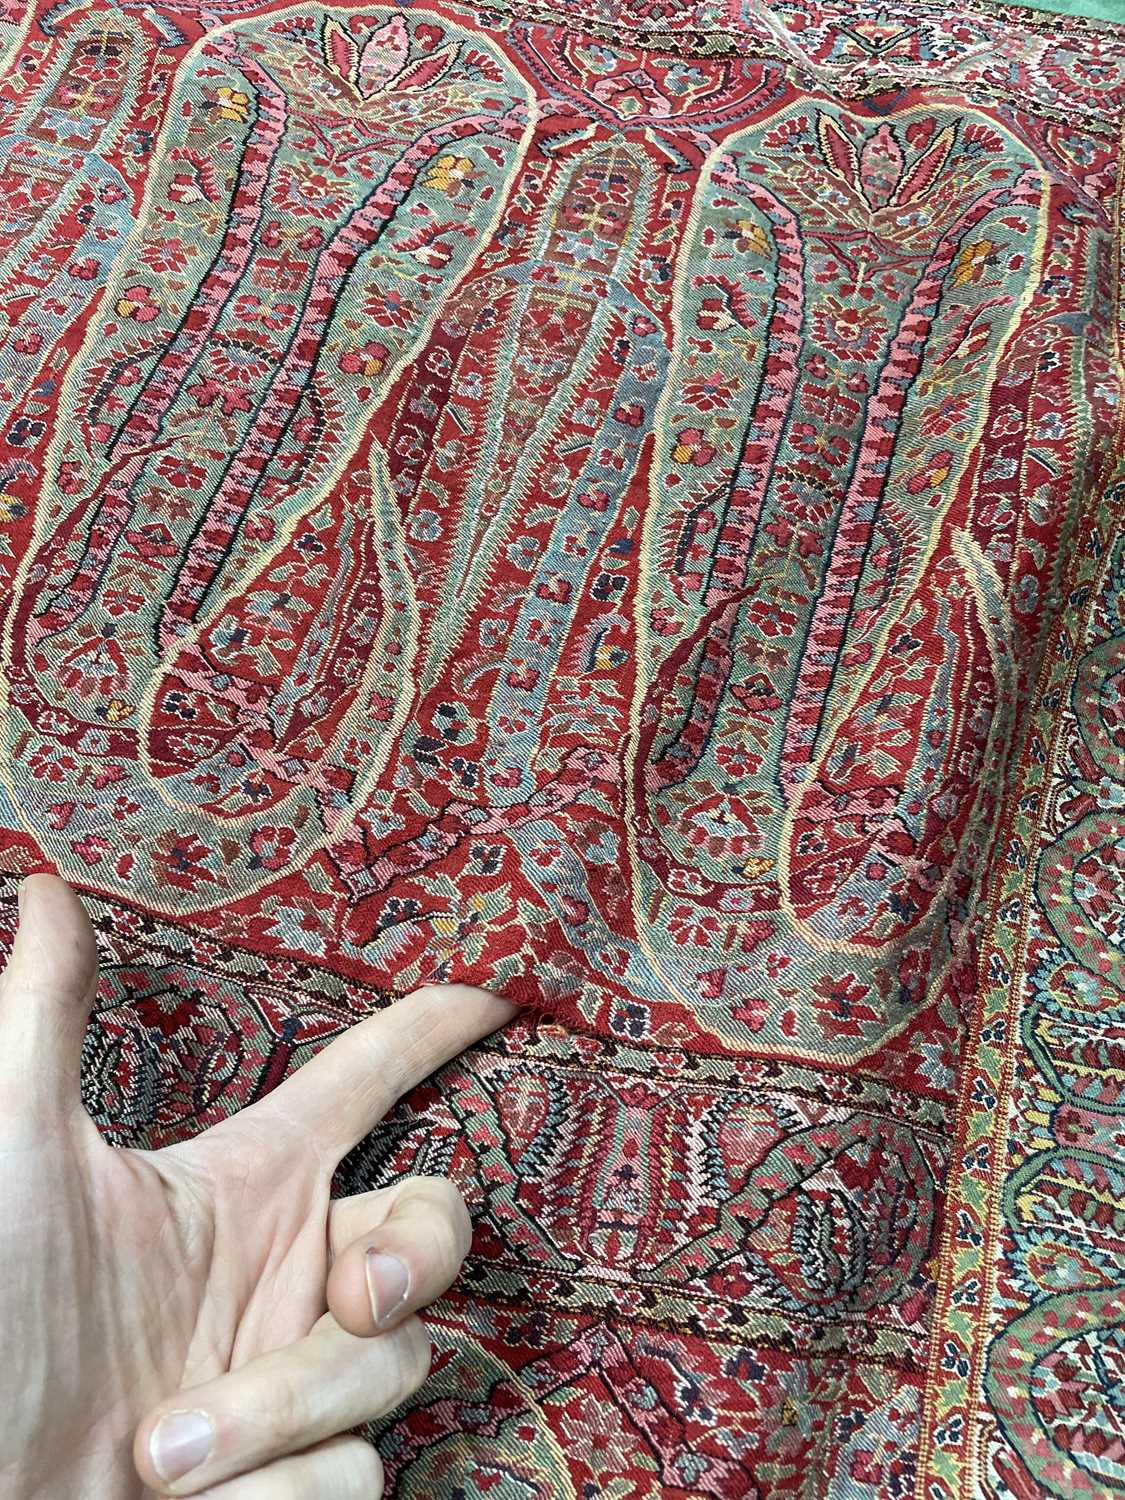 A Kashmir shawl - Image 14 of 20